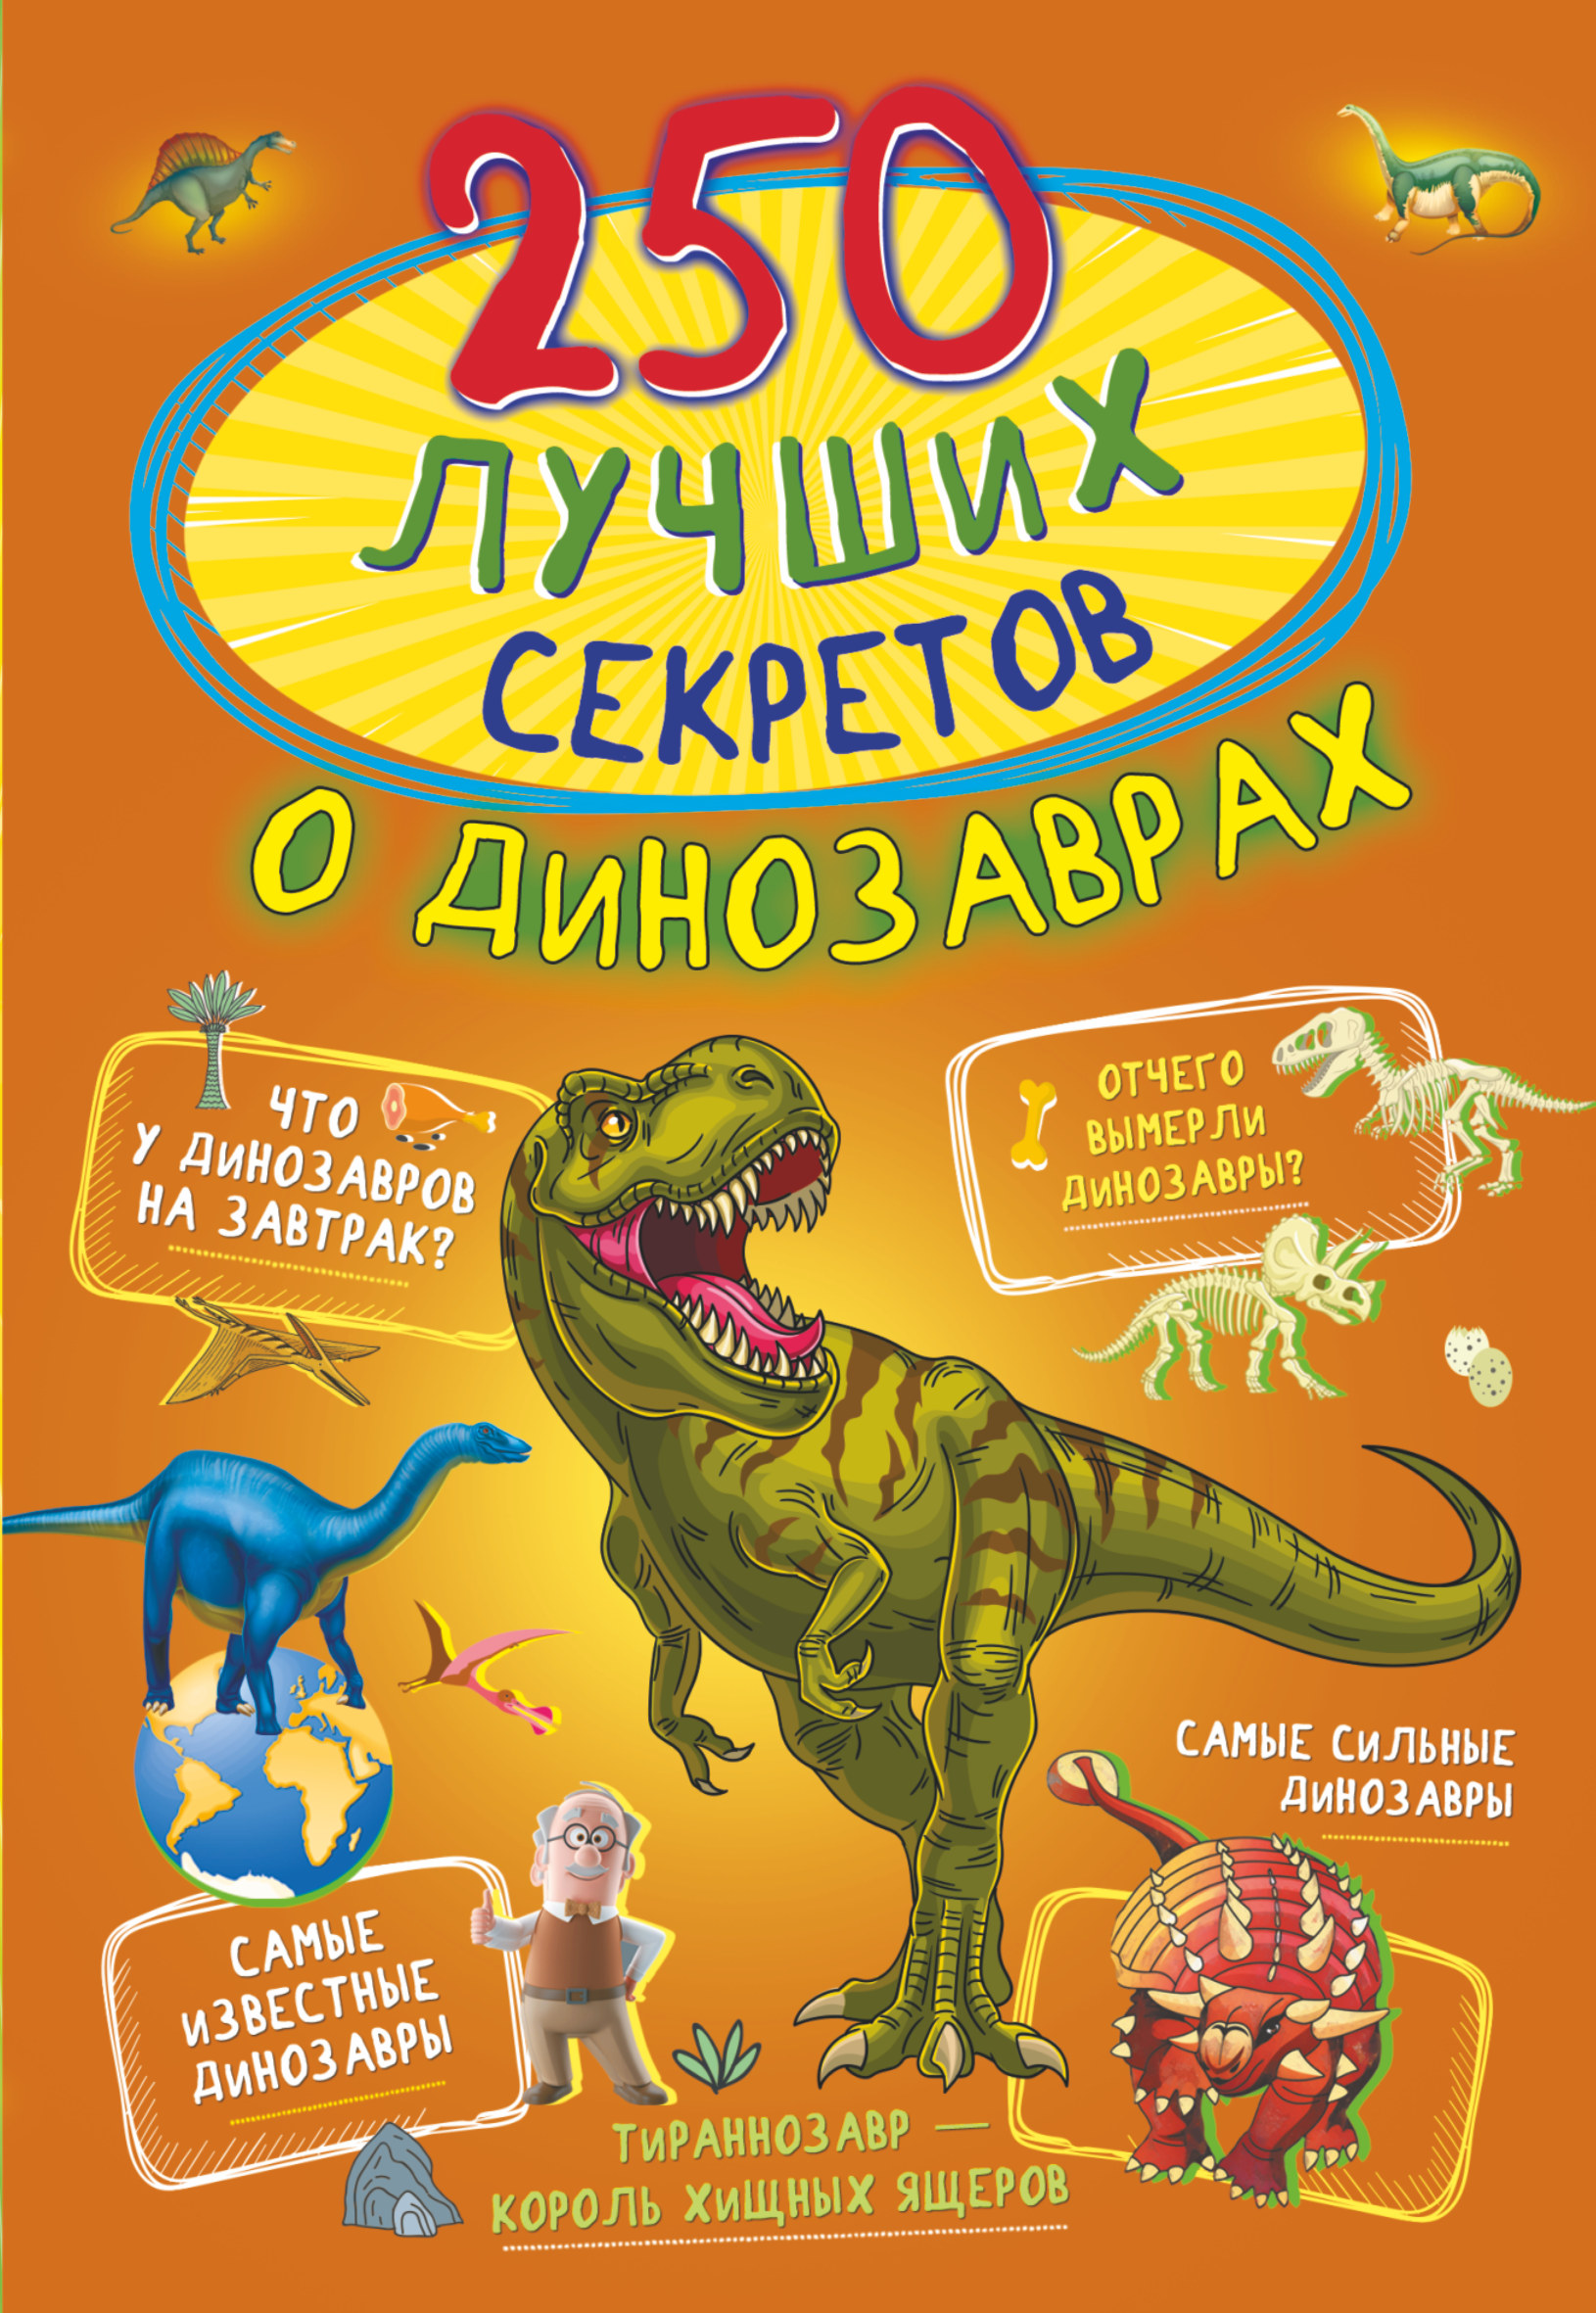 Прудник Анастасия Александровна 250 лучших секретов о динозаврах